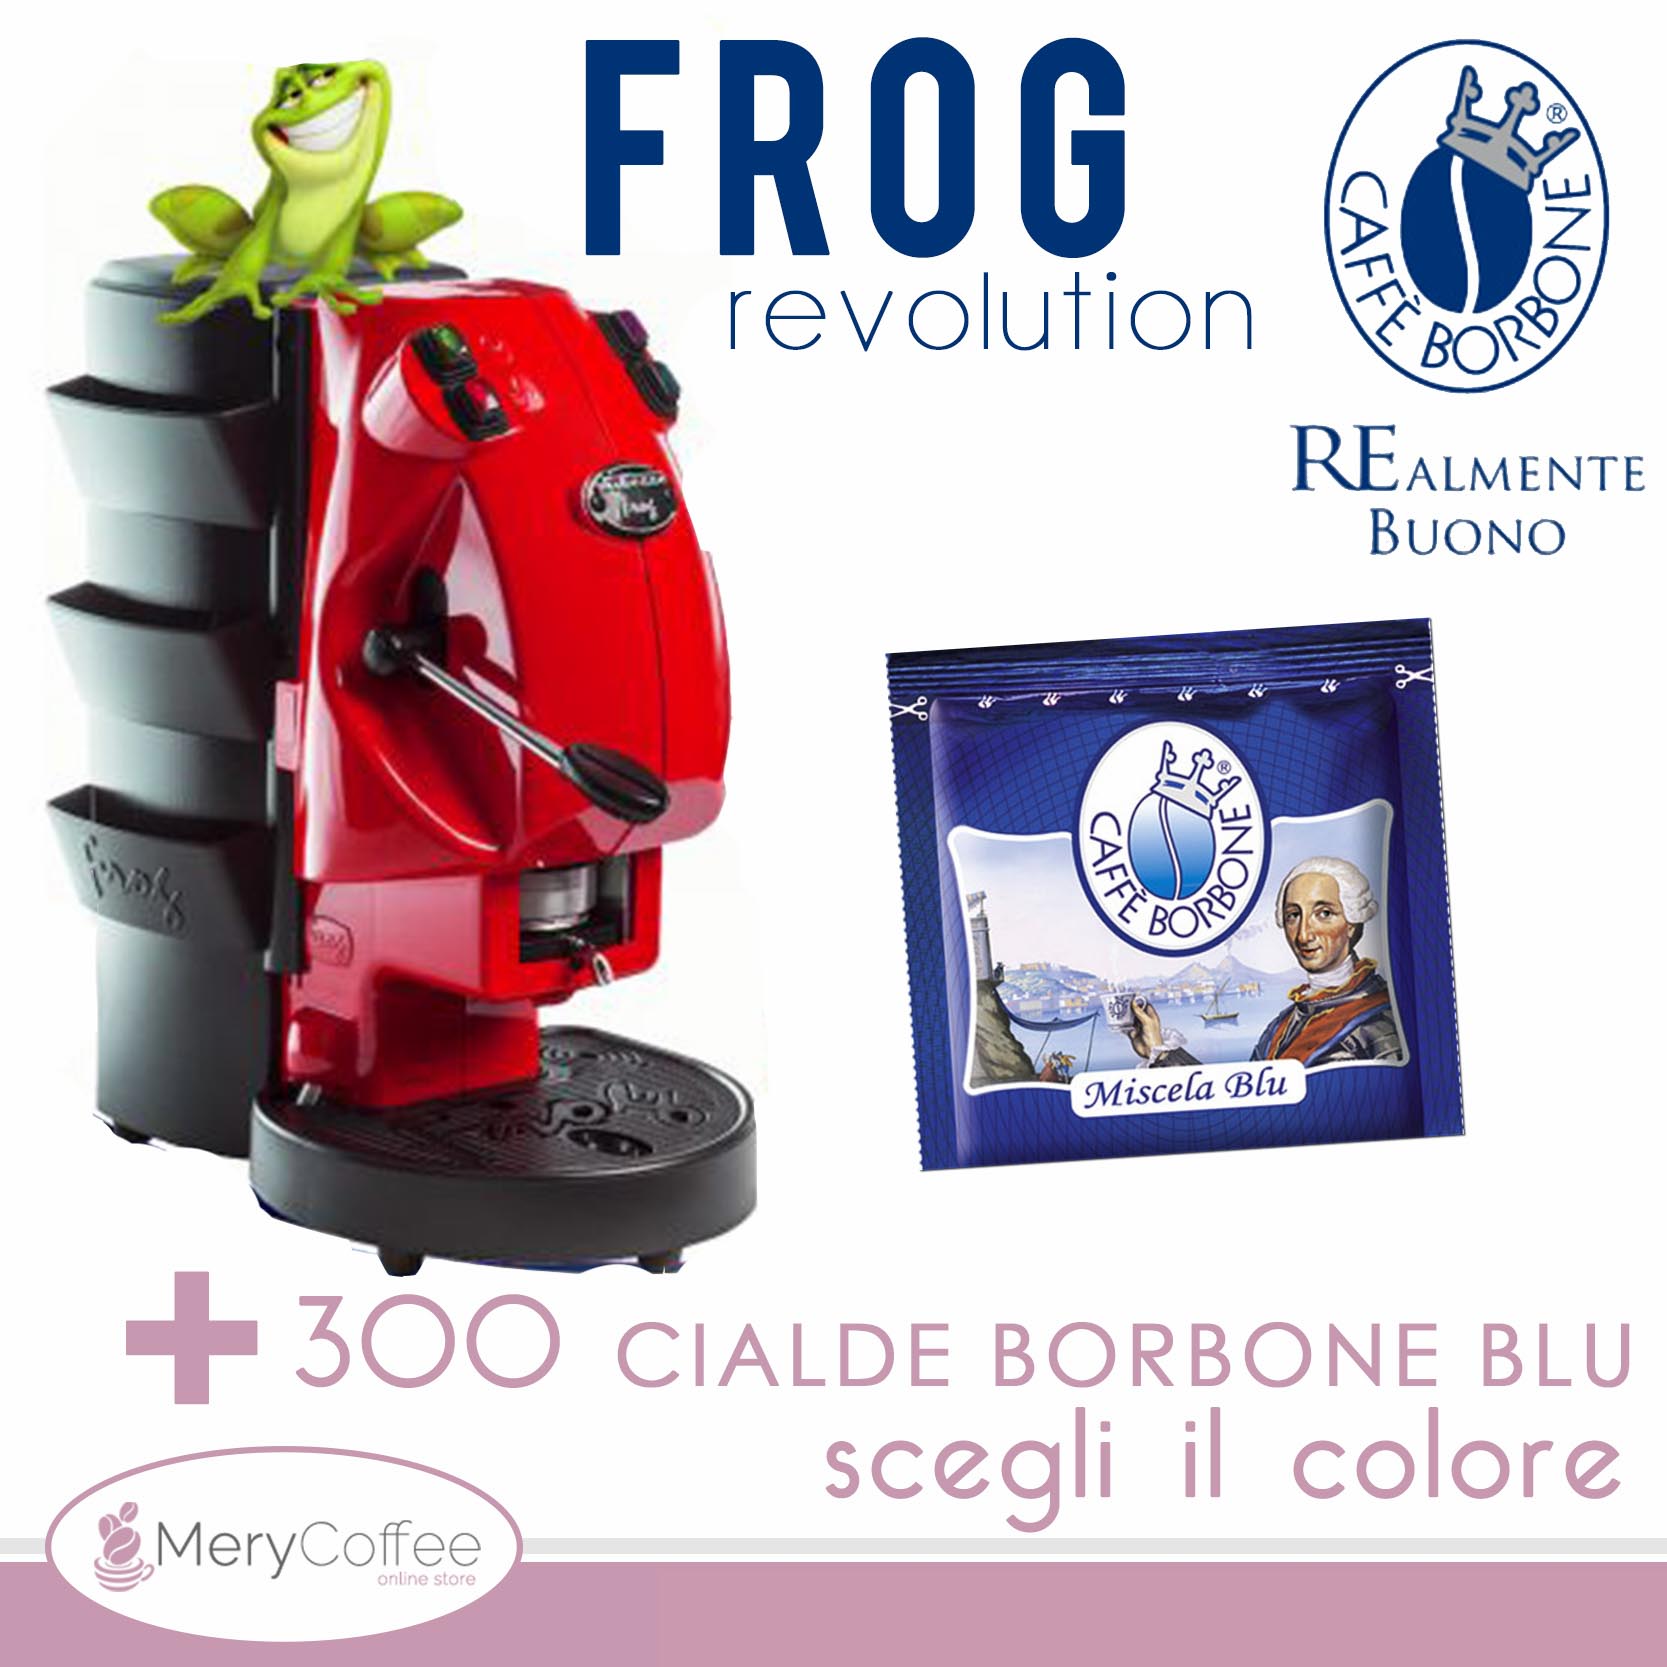 Macchina da caffè Frog con 300 Cialde Borbone Blu incluse